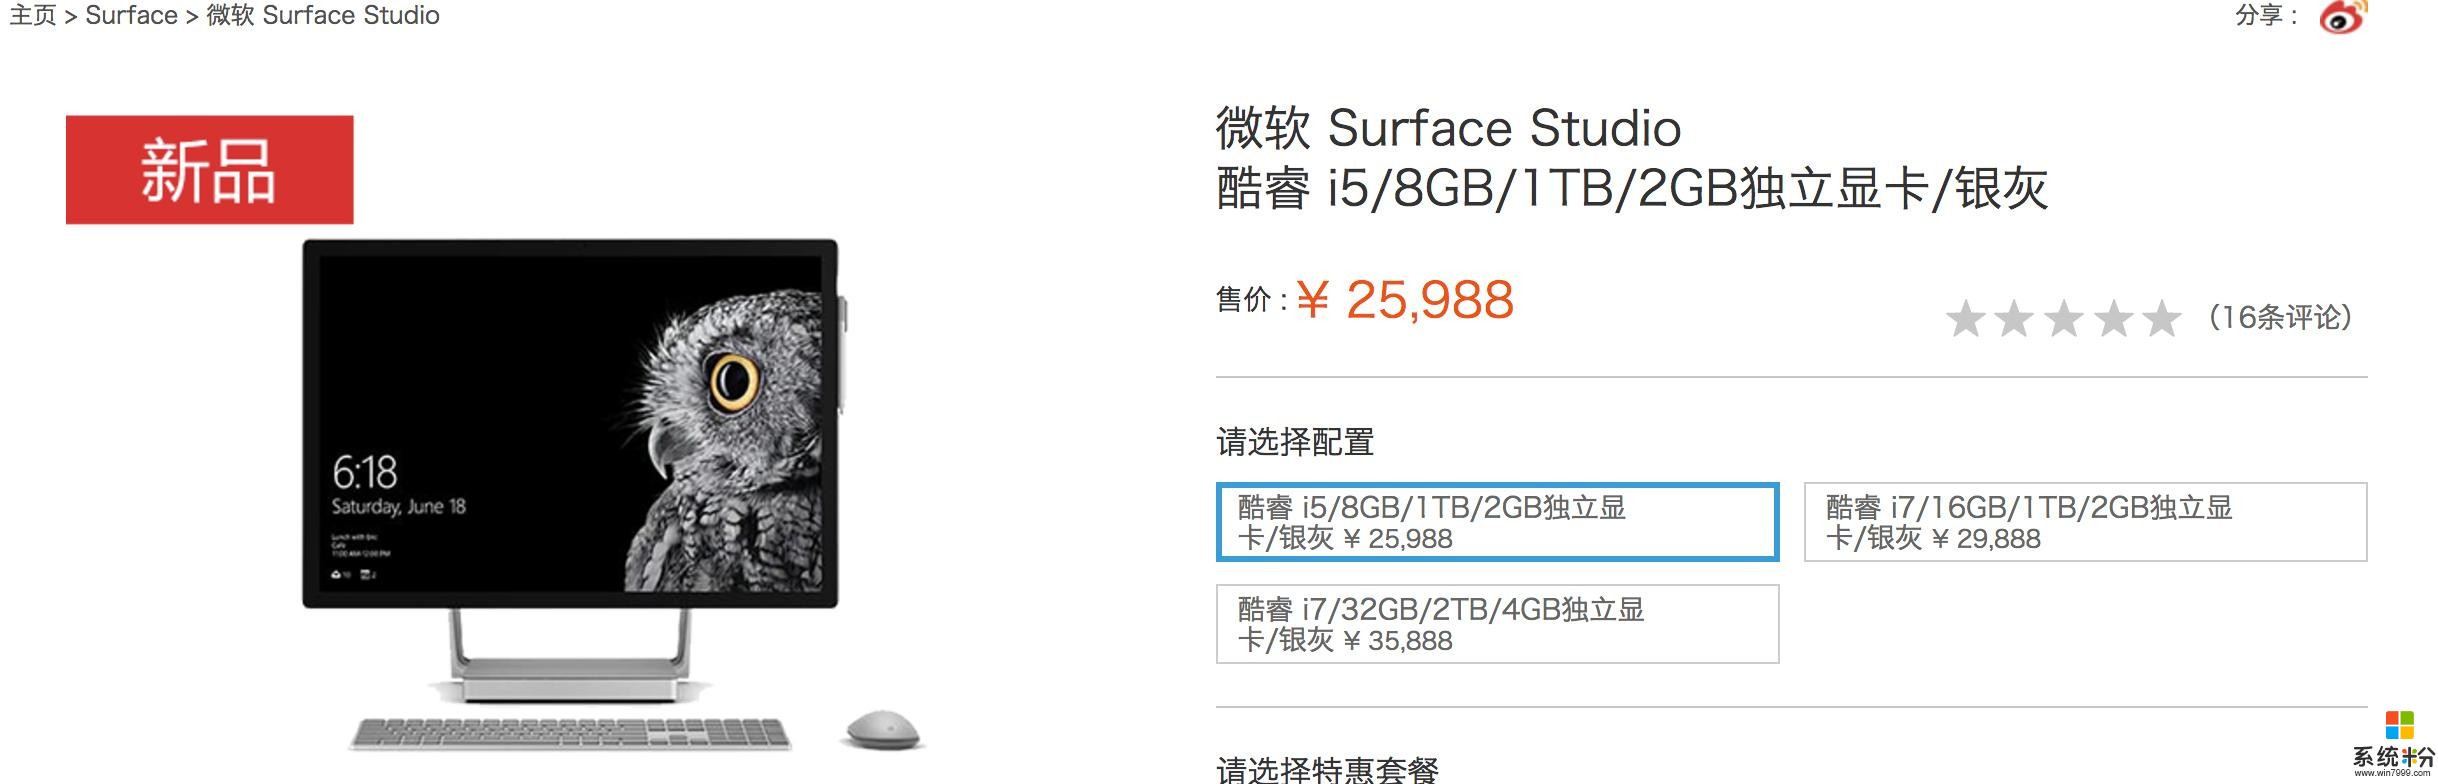 微软中国官网新上架三款surface新品5888元起(8)